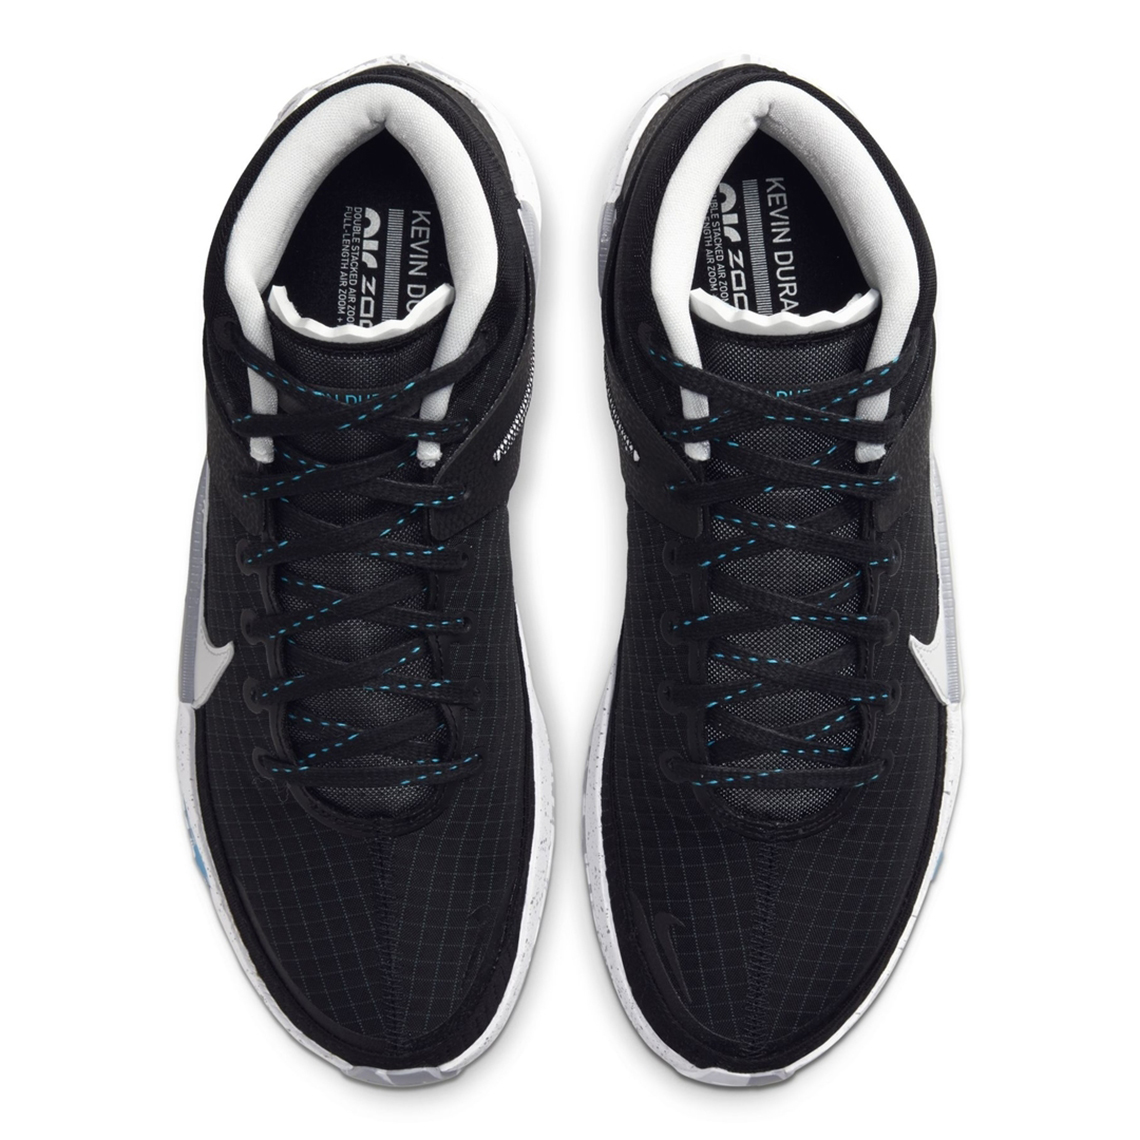 Nike Kd 13 Black Release Info 8